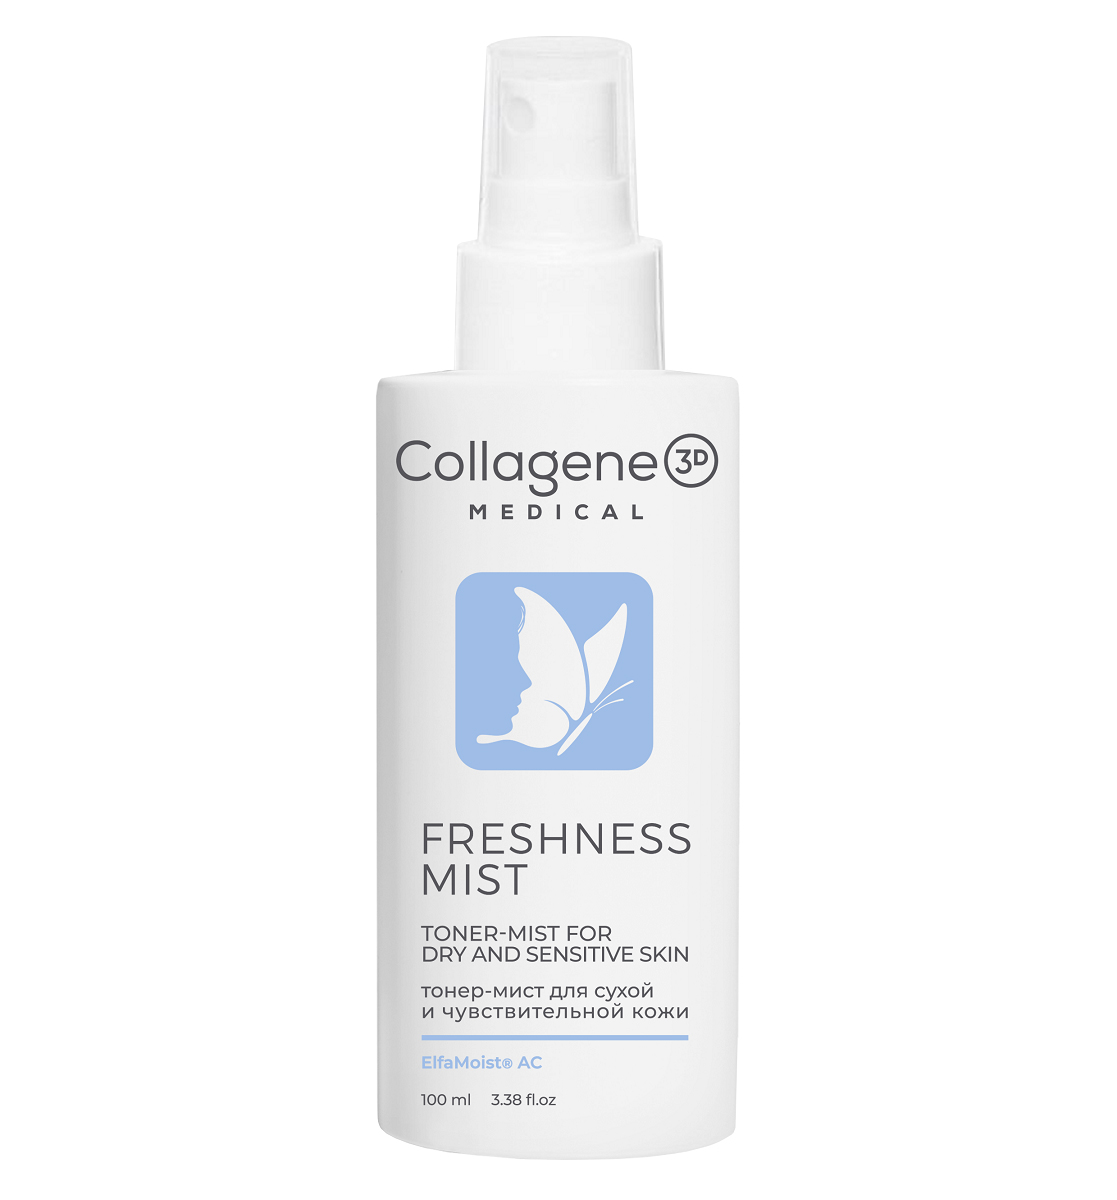 Медикал Коллаген 3Д Тонер-мист для сухой и чувствительной кожи Freshness Mist, 100 мл (Medical Collagene 3D, Smart Cleaner) фото 0